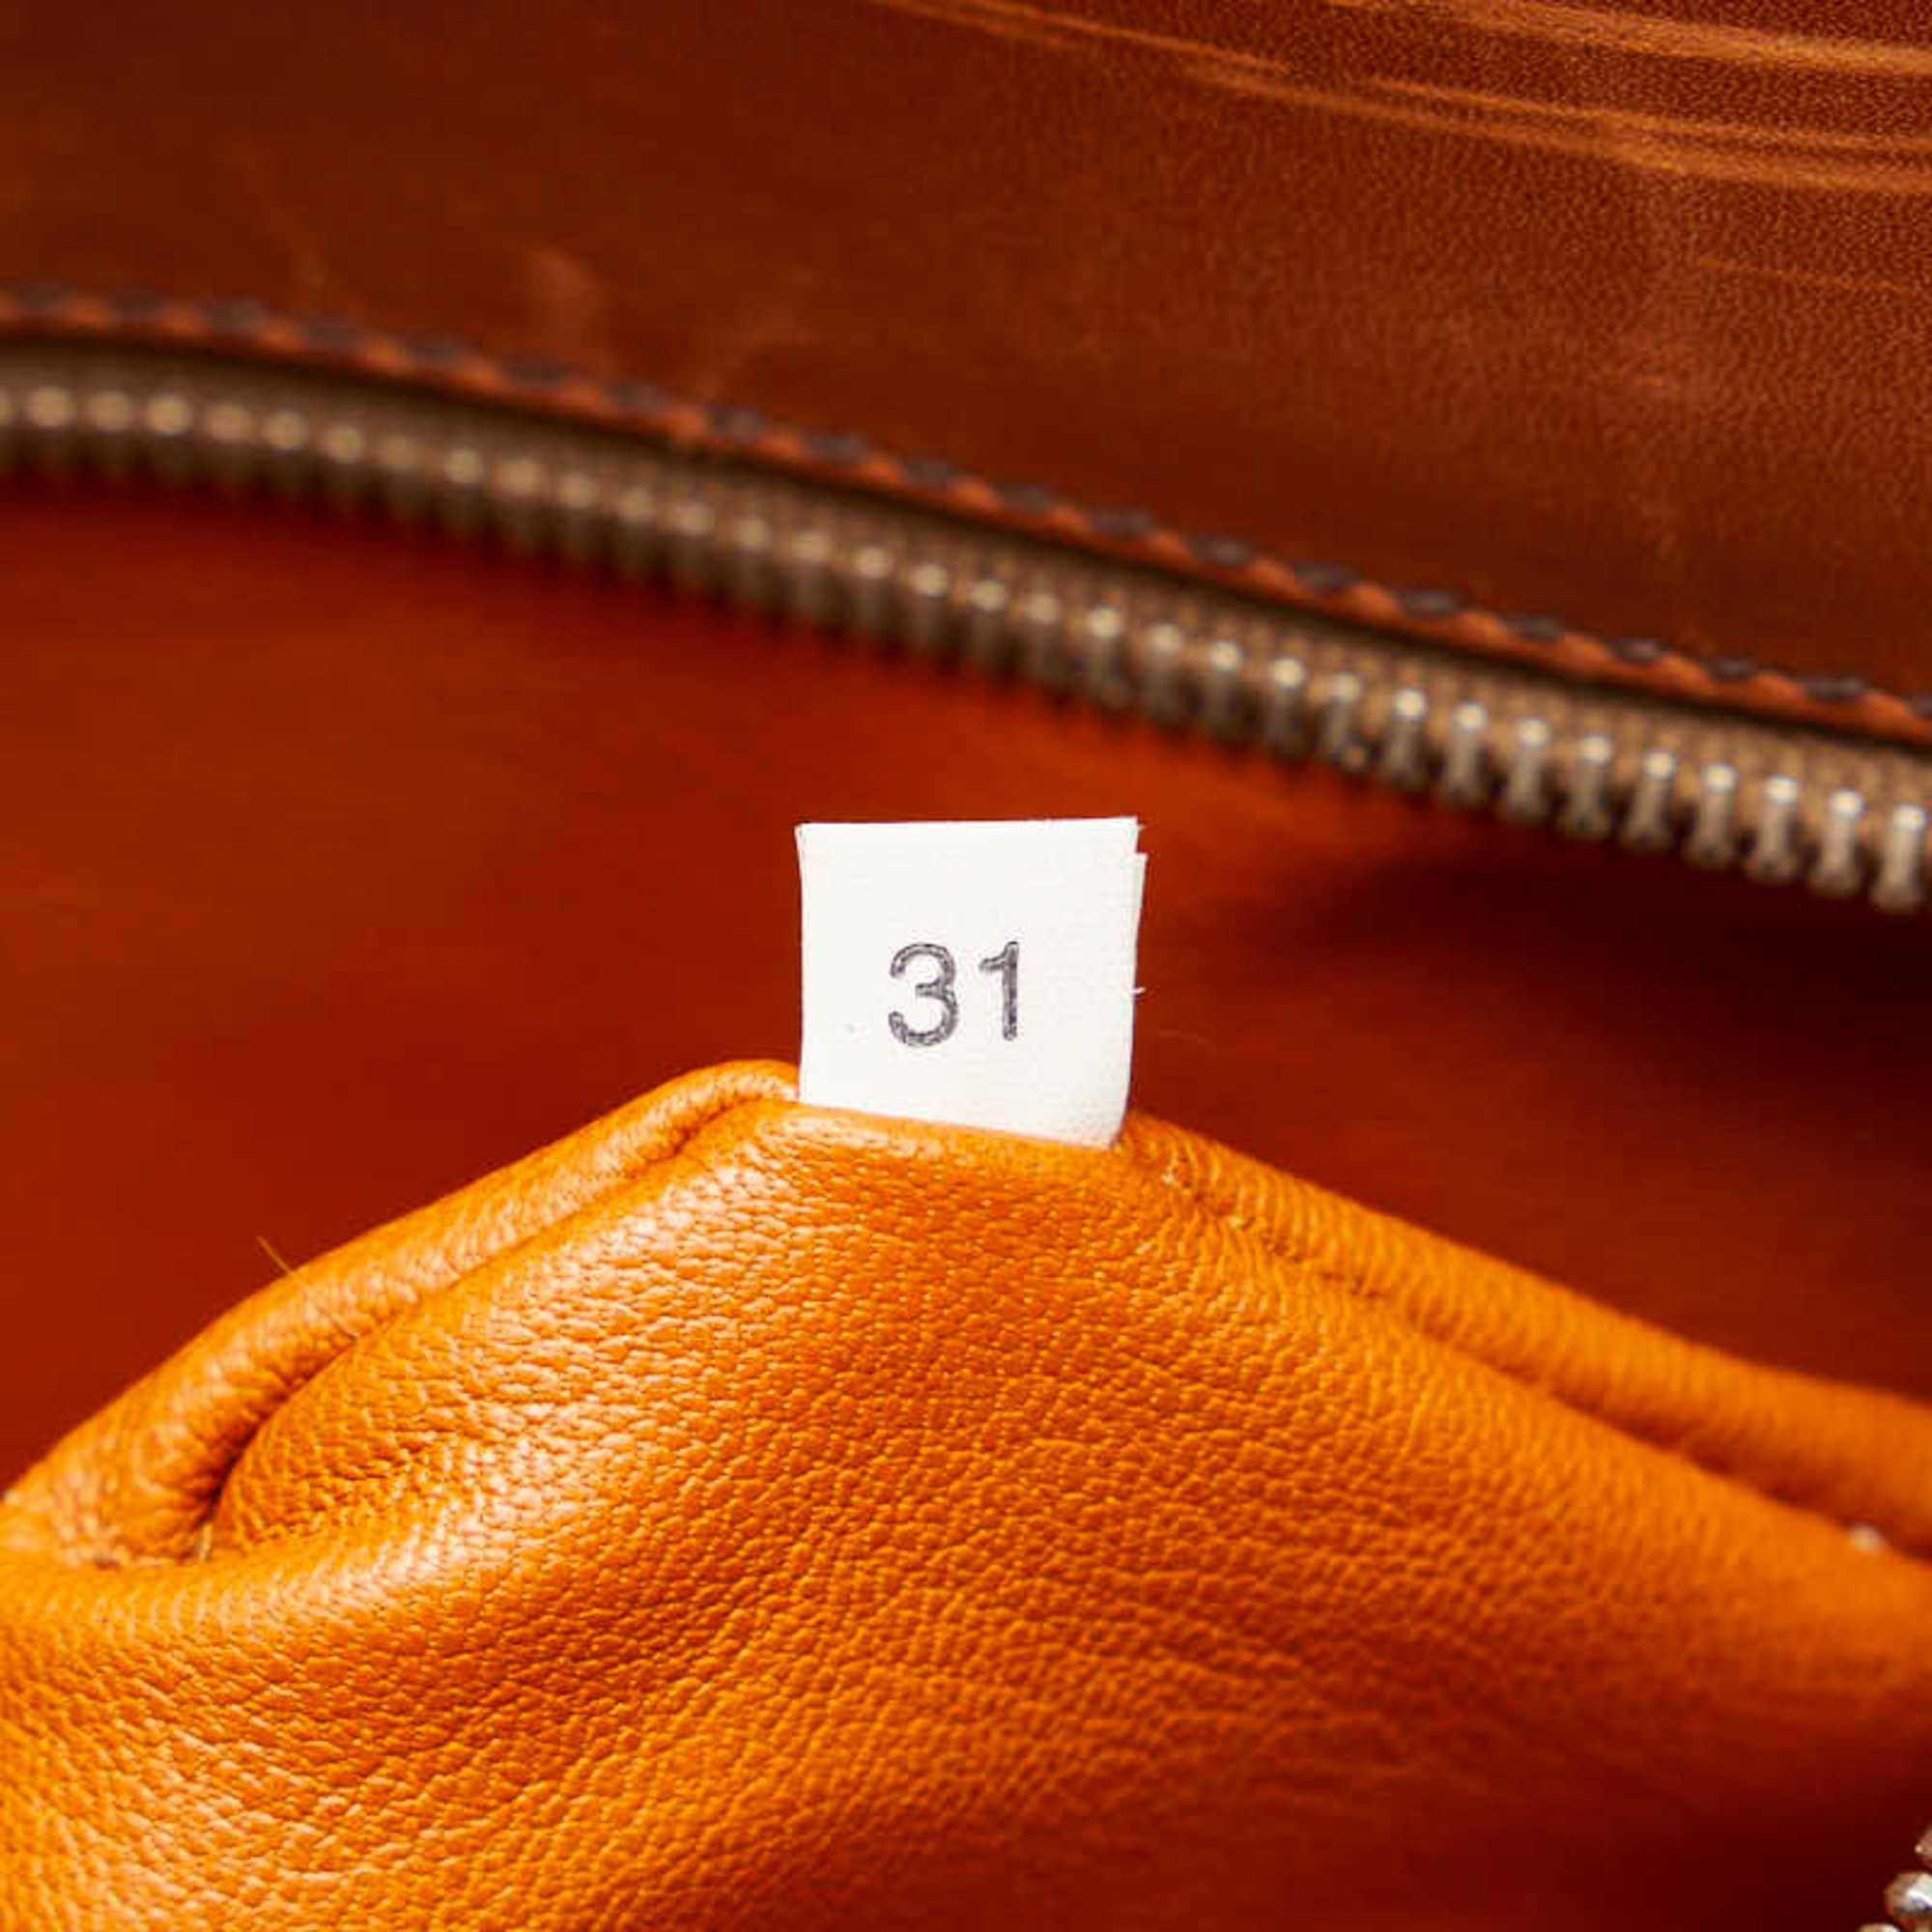 Prada handbag bag brown leather women's PRADA